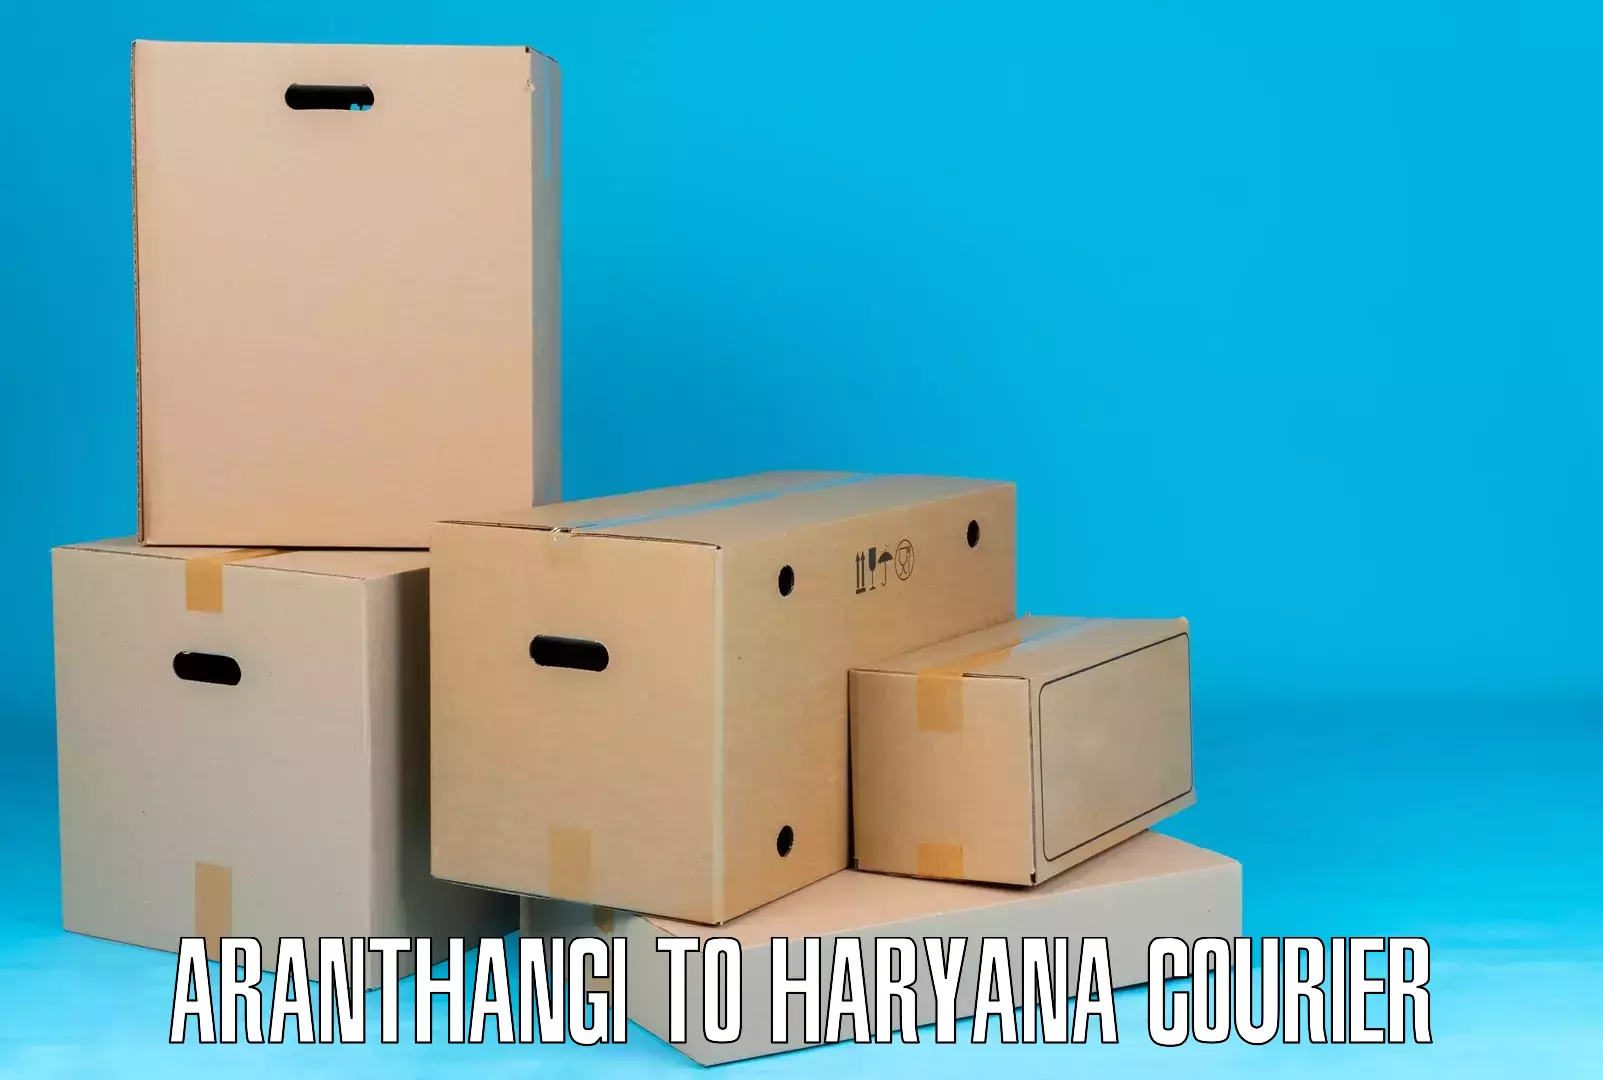 Logistics management Aranthangi to Bhuna